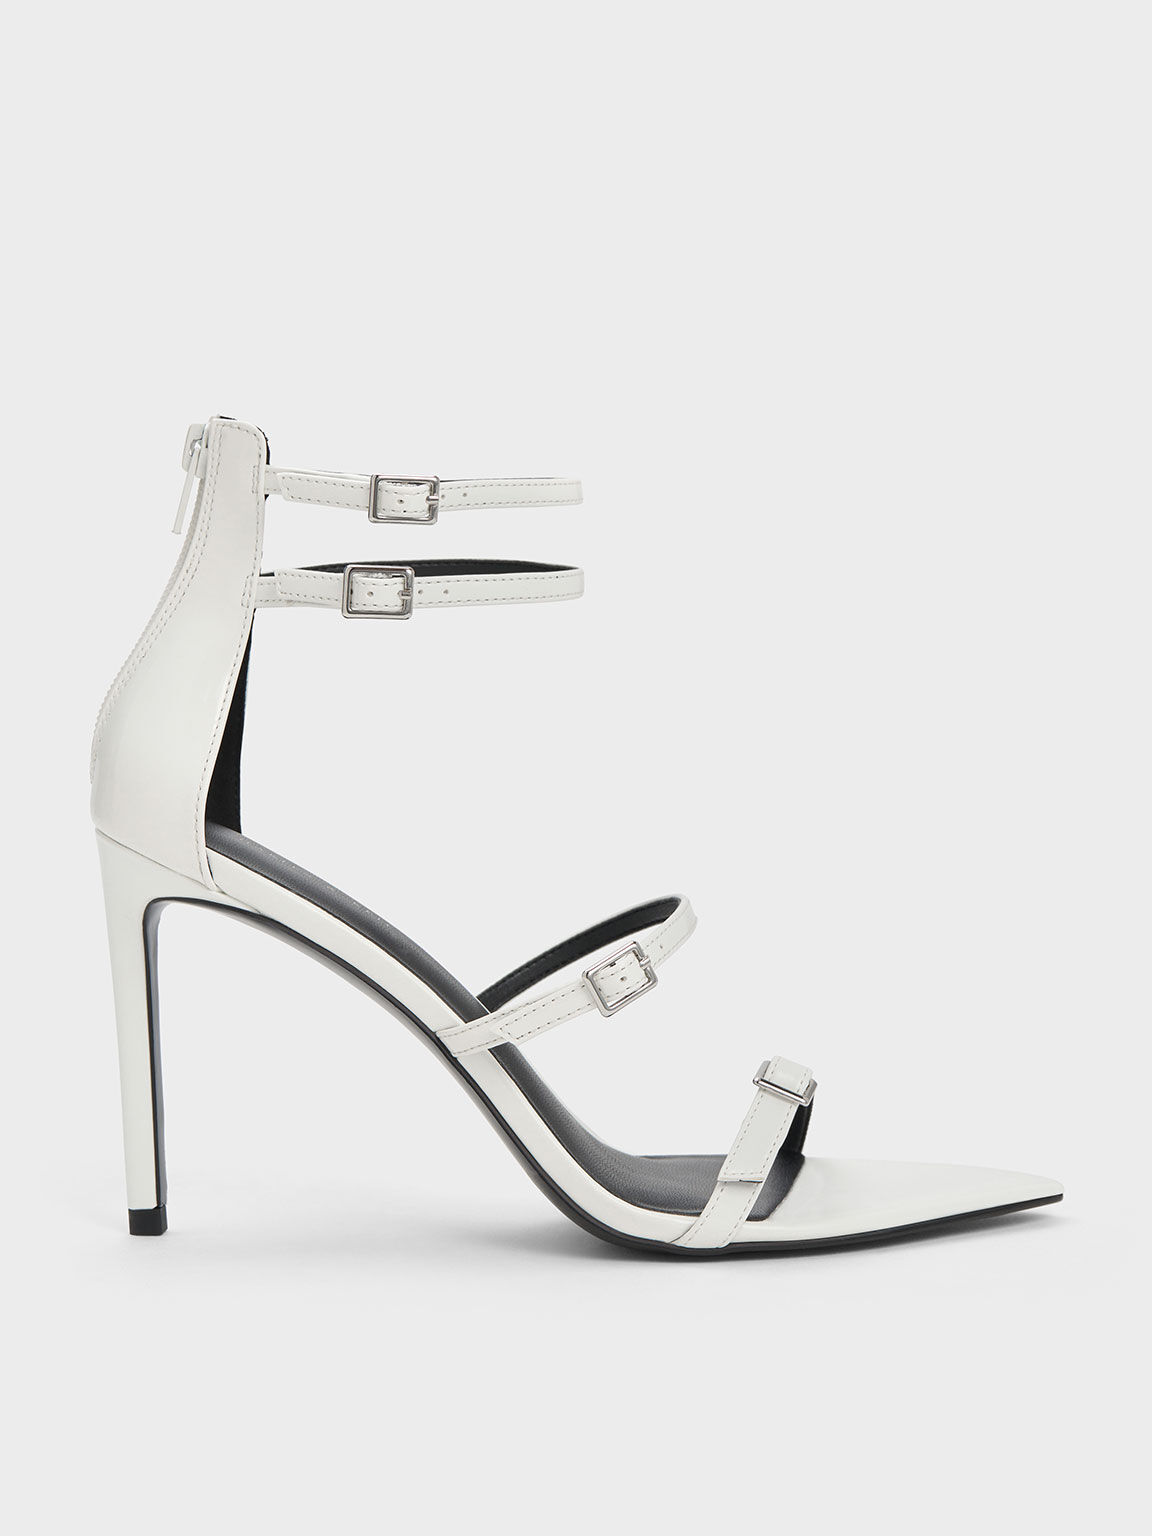 ZARA Sandals Womens 8 White Square Toe Cone Heel Strappy Slip On NWT Bride  | eBay